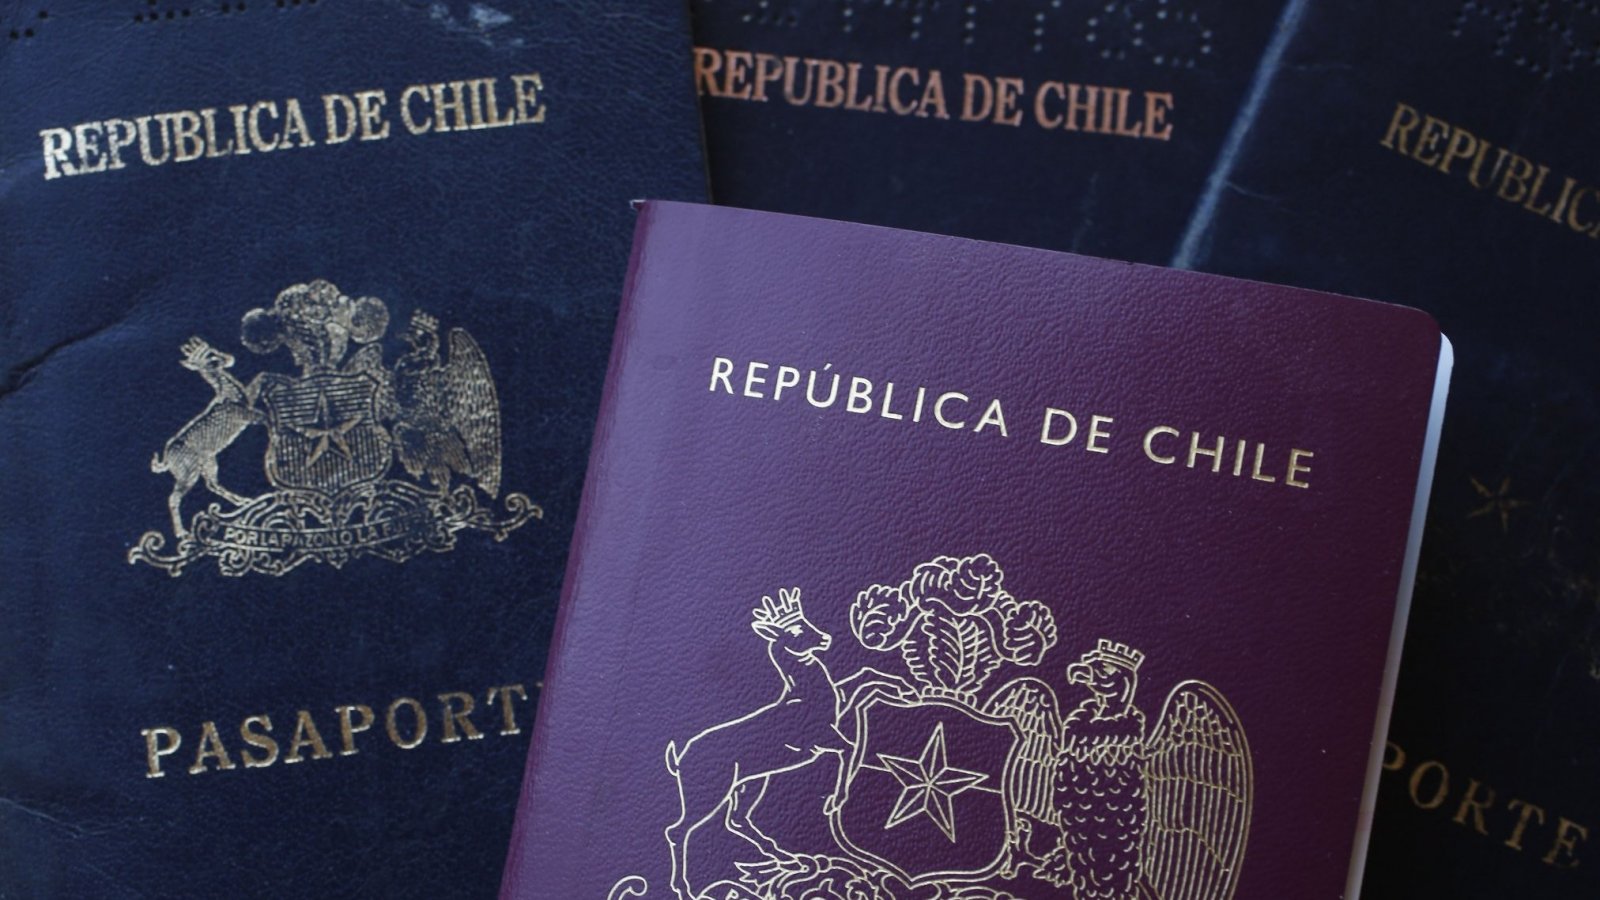 Pasaportes de Chile